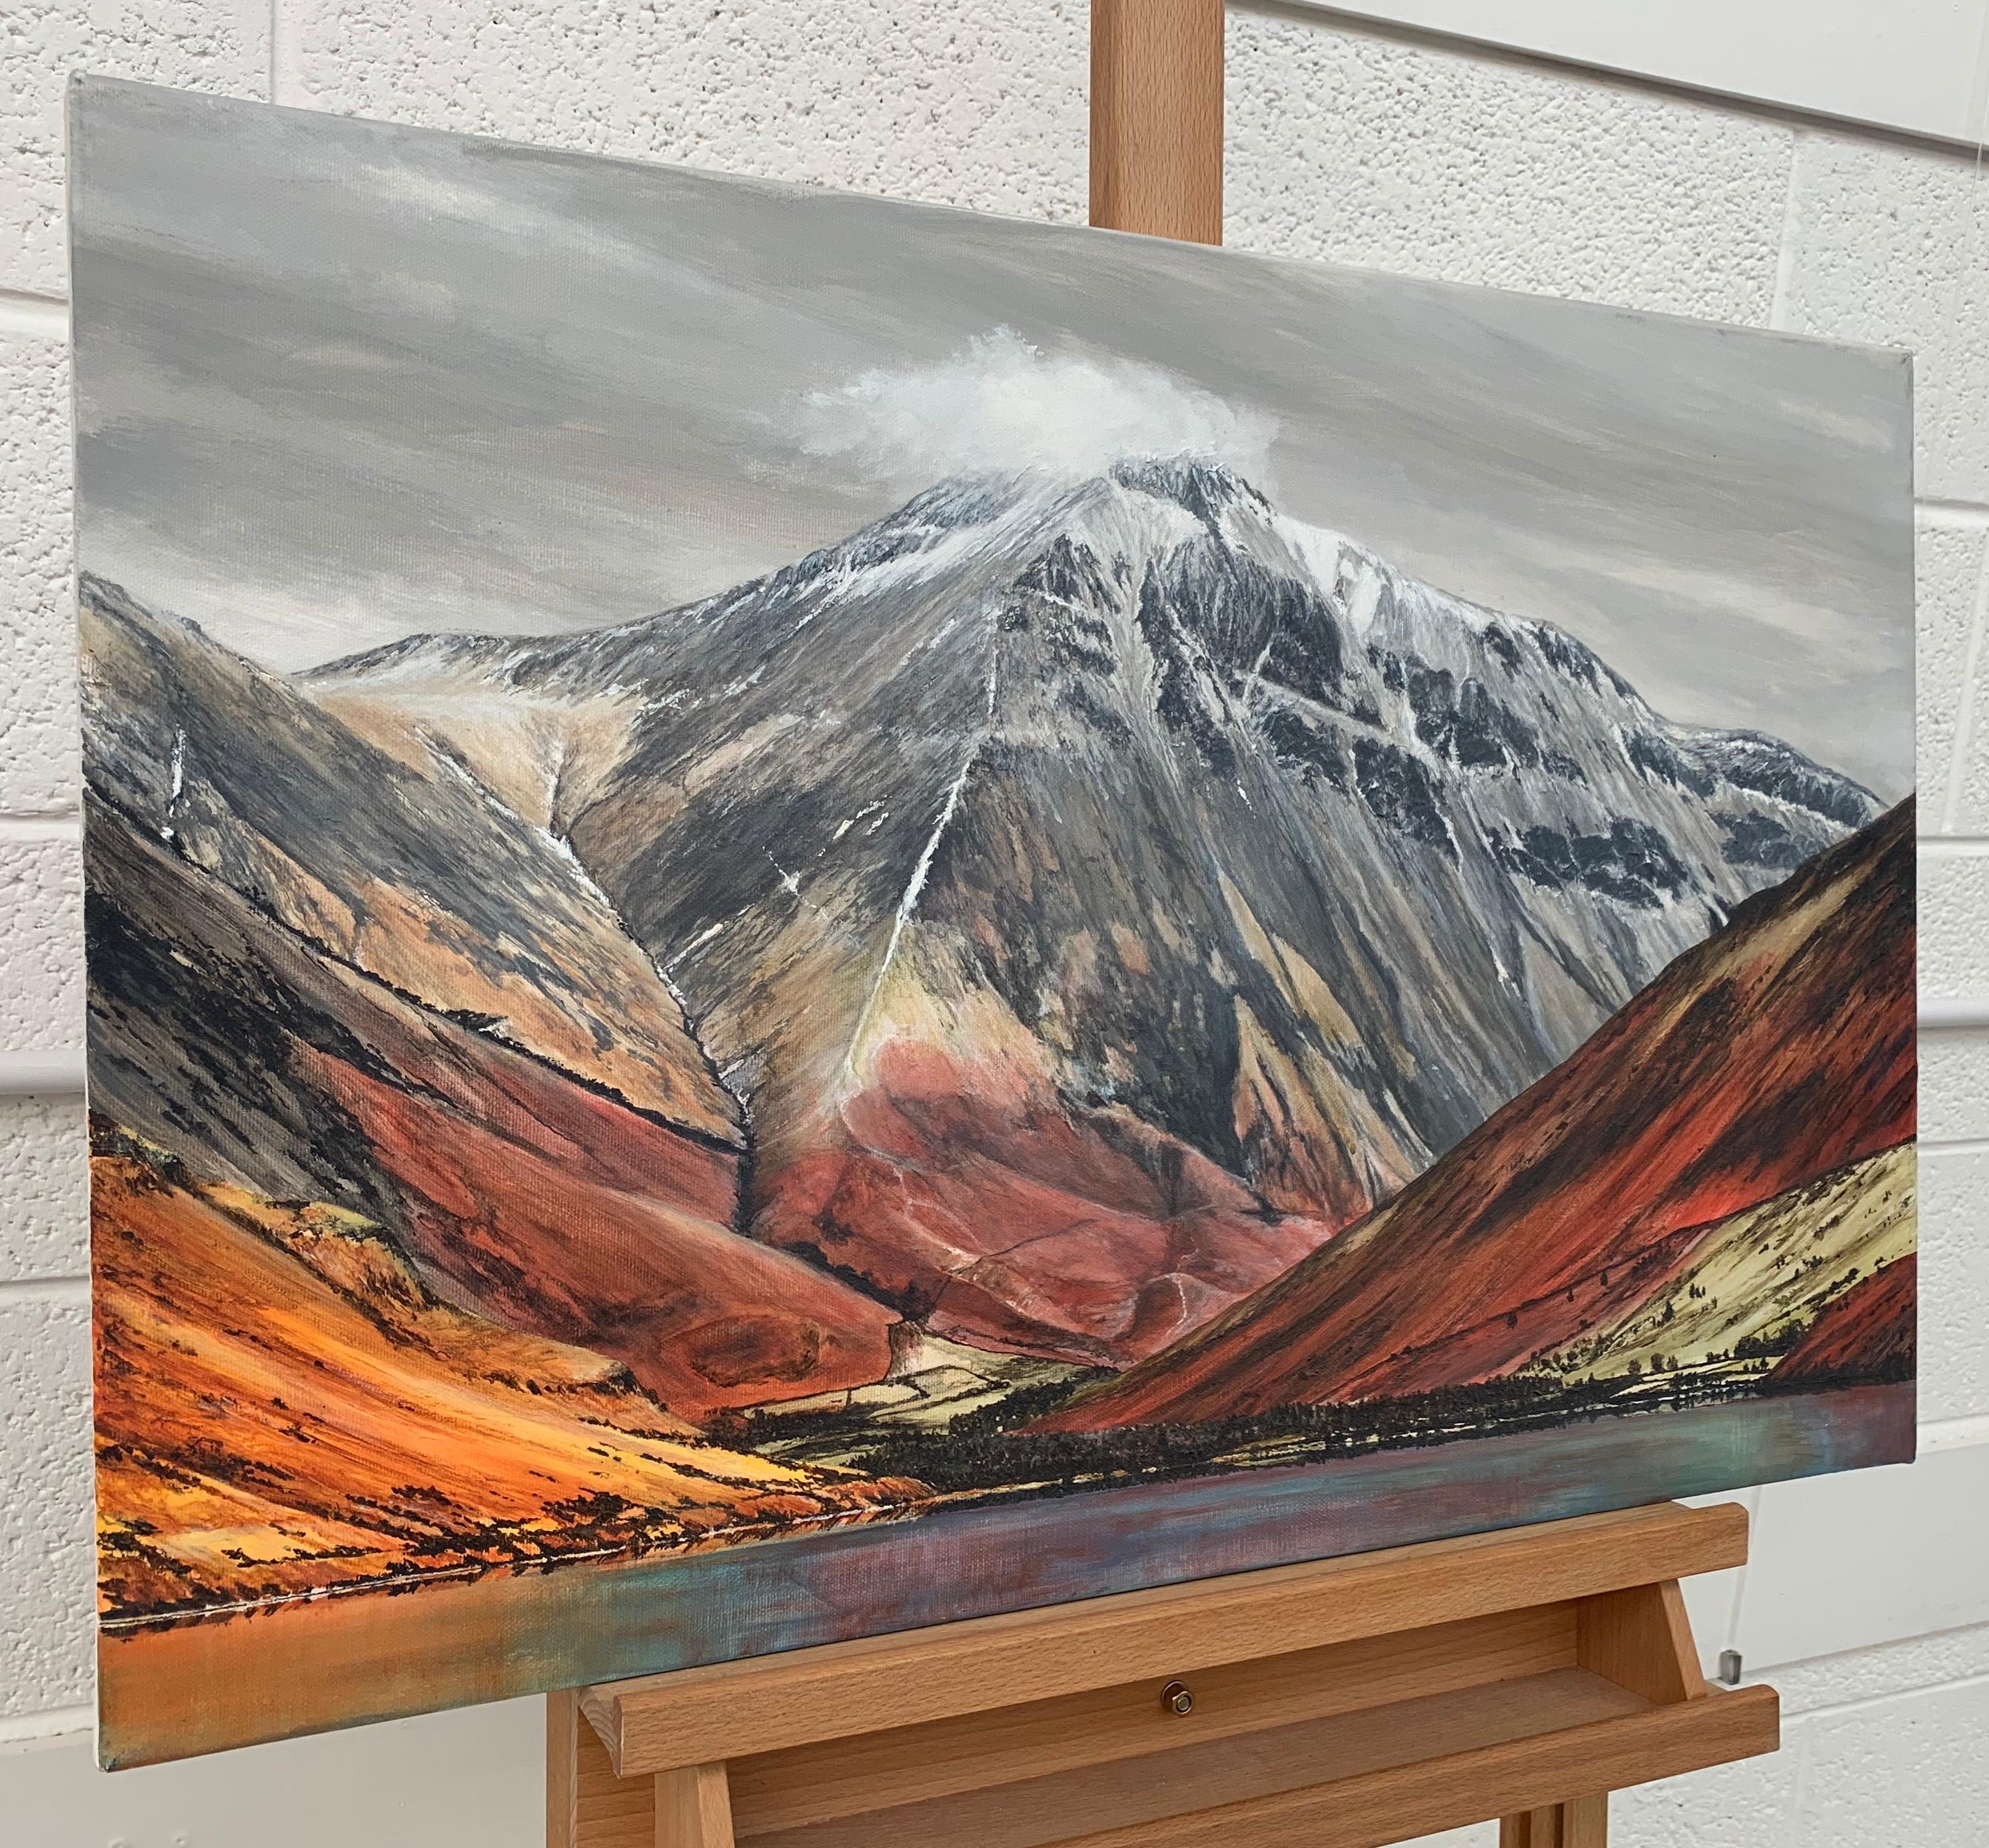 Mountain Landscape Painting of Great Gable in the English Lake District der britischen zeitgenössischen Künstlerin Rebecca Ann Wilmer. Rebecca wurde 1979 in Lancashire geboren und malte und zeichnete während ihres Schullebens Landschaften. Sie